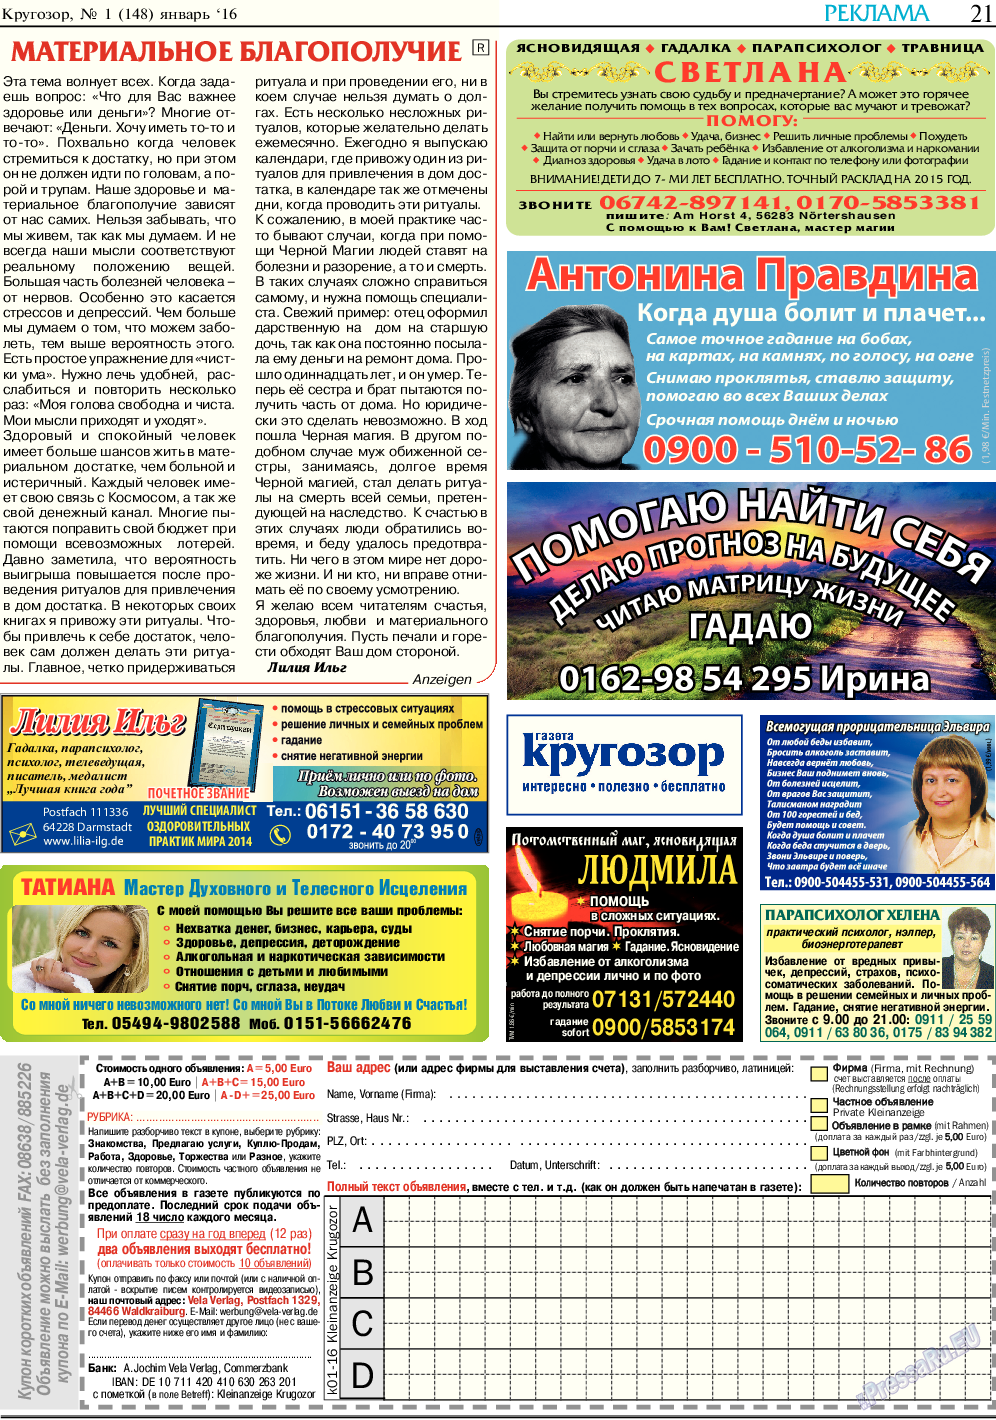 Кругозор, газета. 2016 №1 стр.21